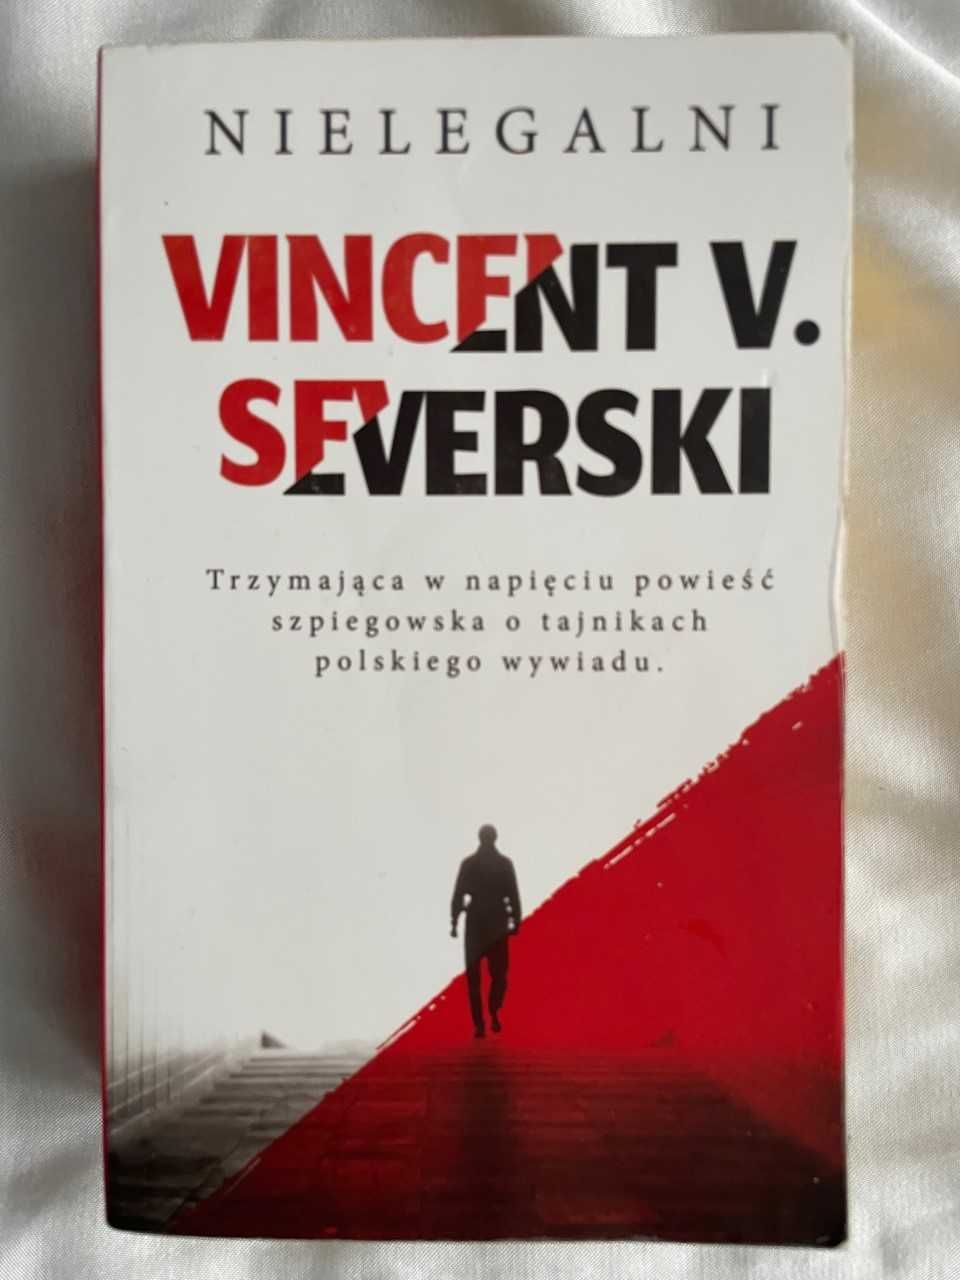 Vincent V. Severski - Nielegalni książka